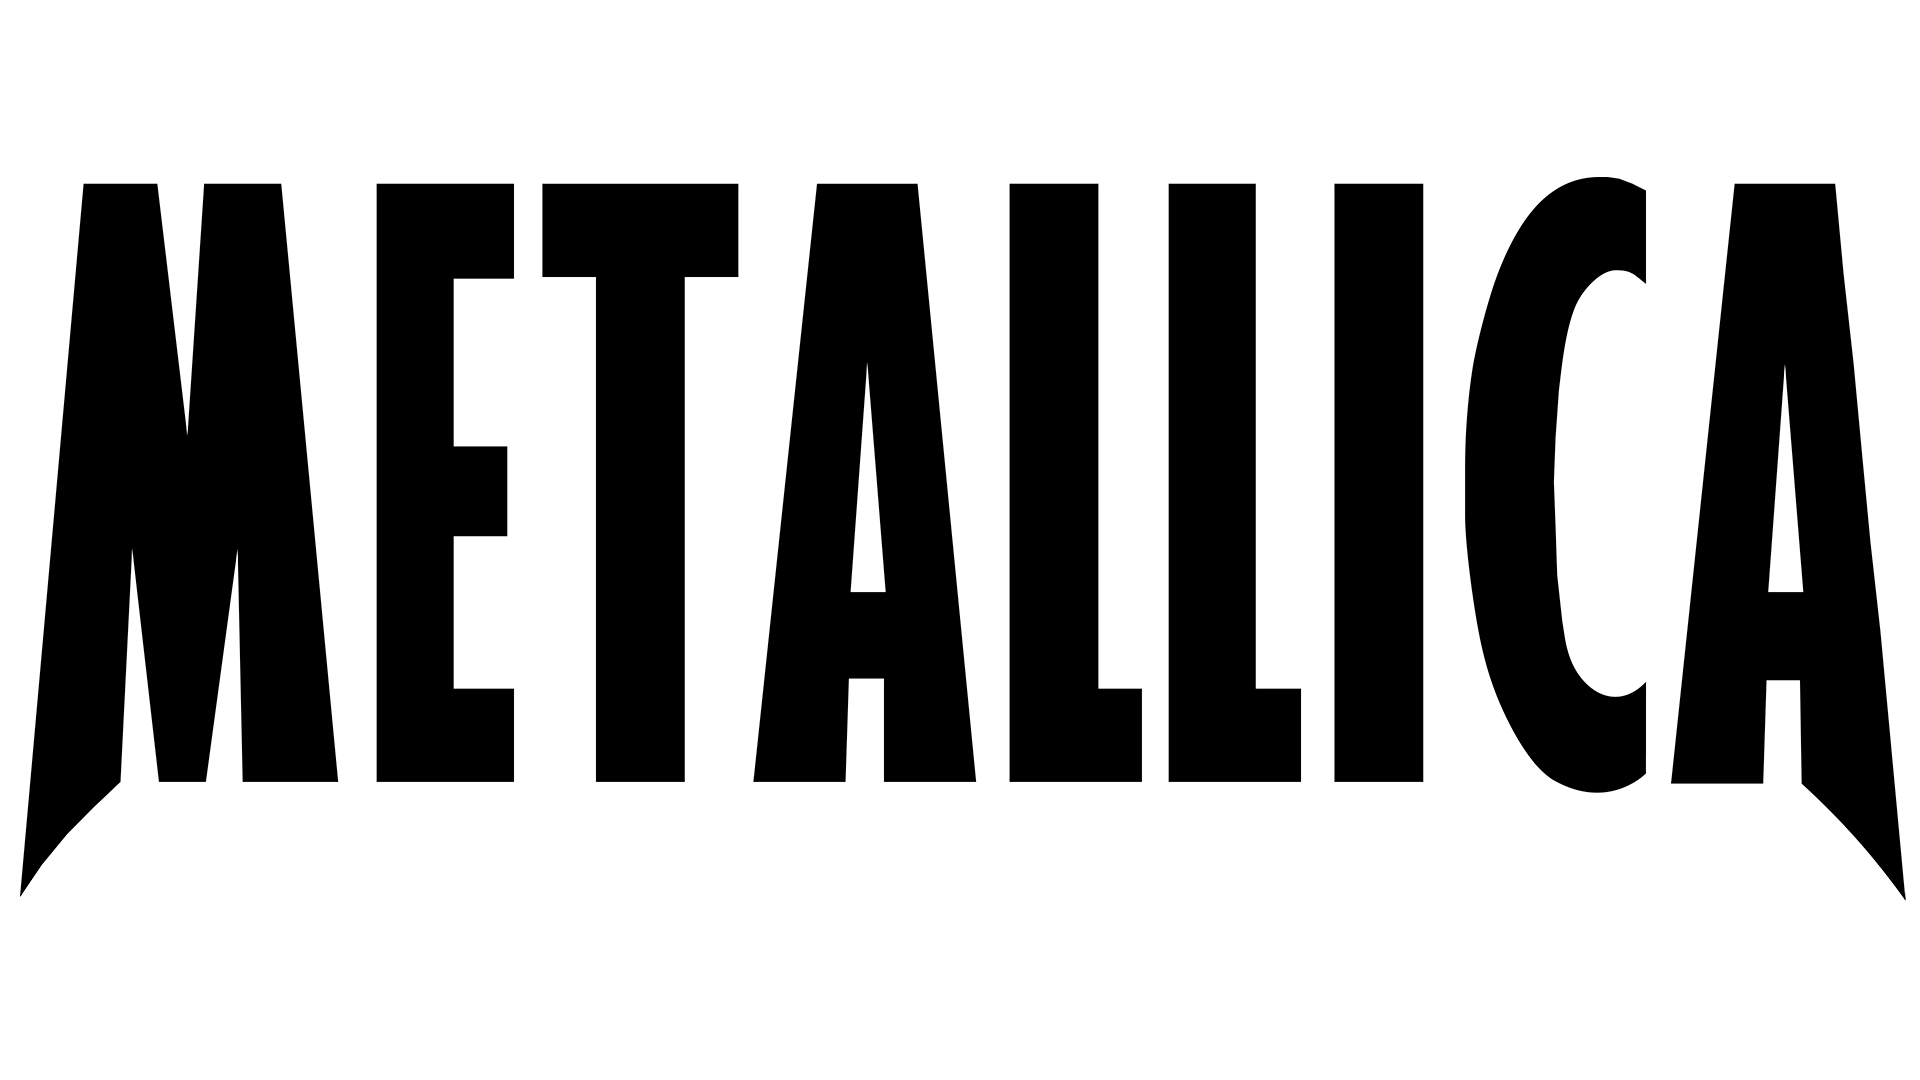 Metallica Logo | Significado, História e PNG